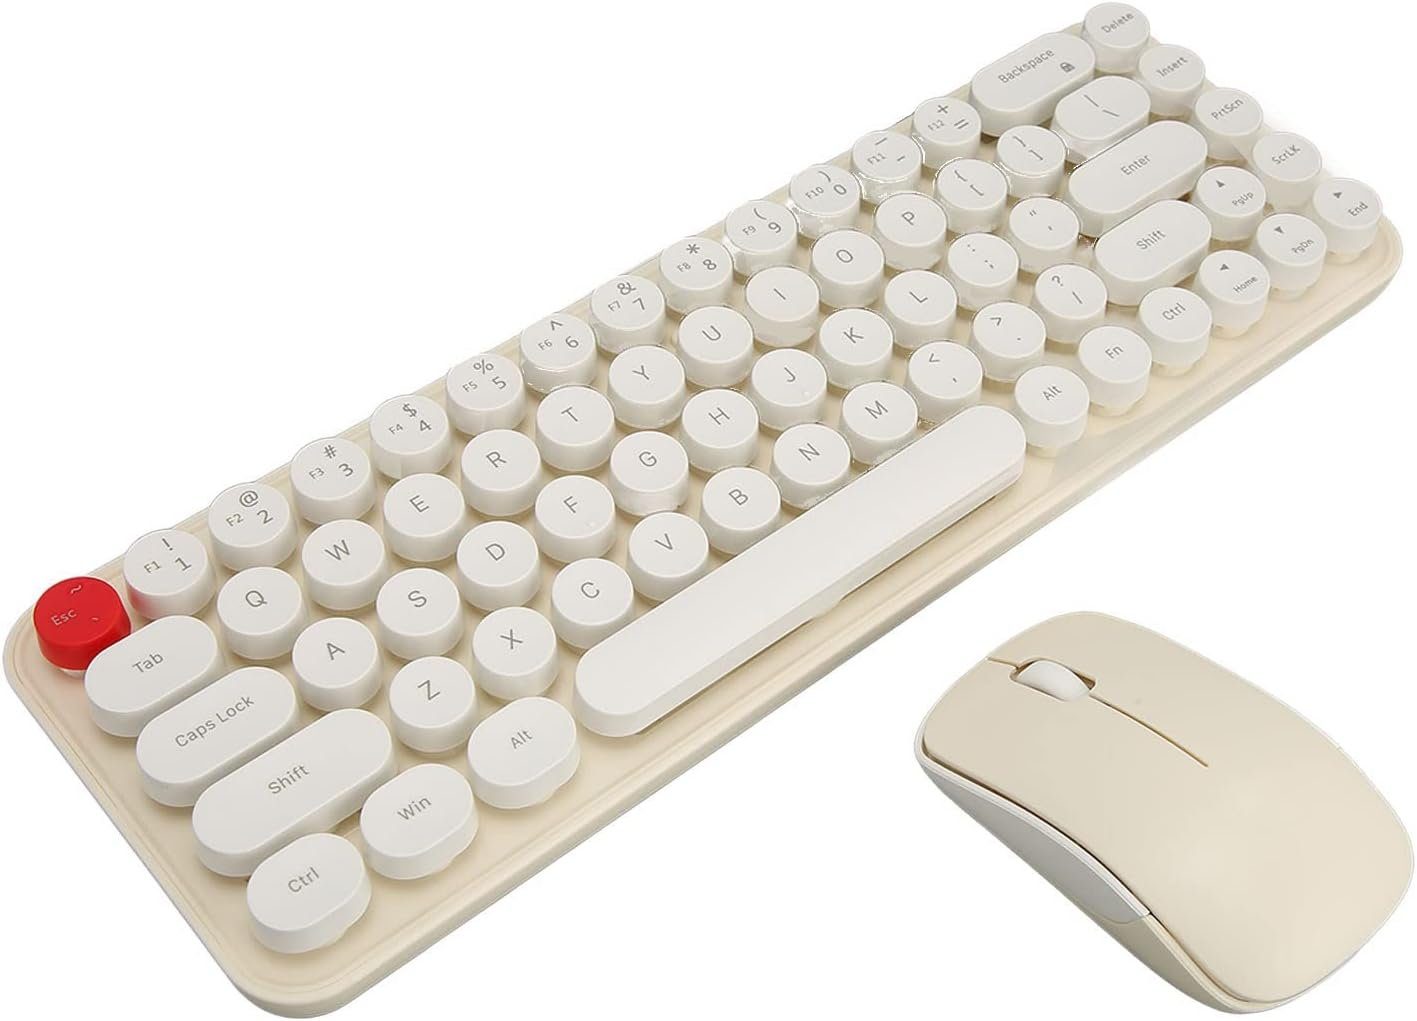 Topiky Effiziente Shortcuts und Retro-Design mit Dot Keycaps Tastatur- und Maus-Set, Effizienz Stabile 2,4-G-Verbindung Energiespar-Technologie Vielseitige